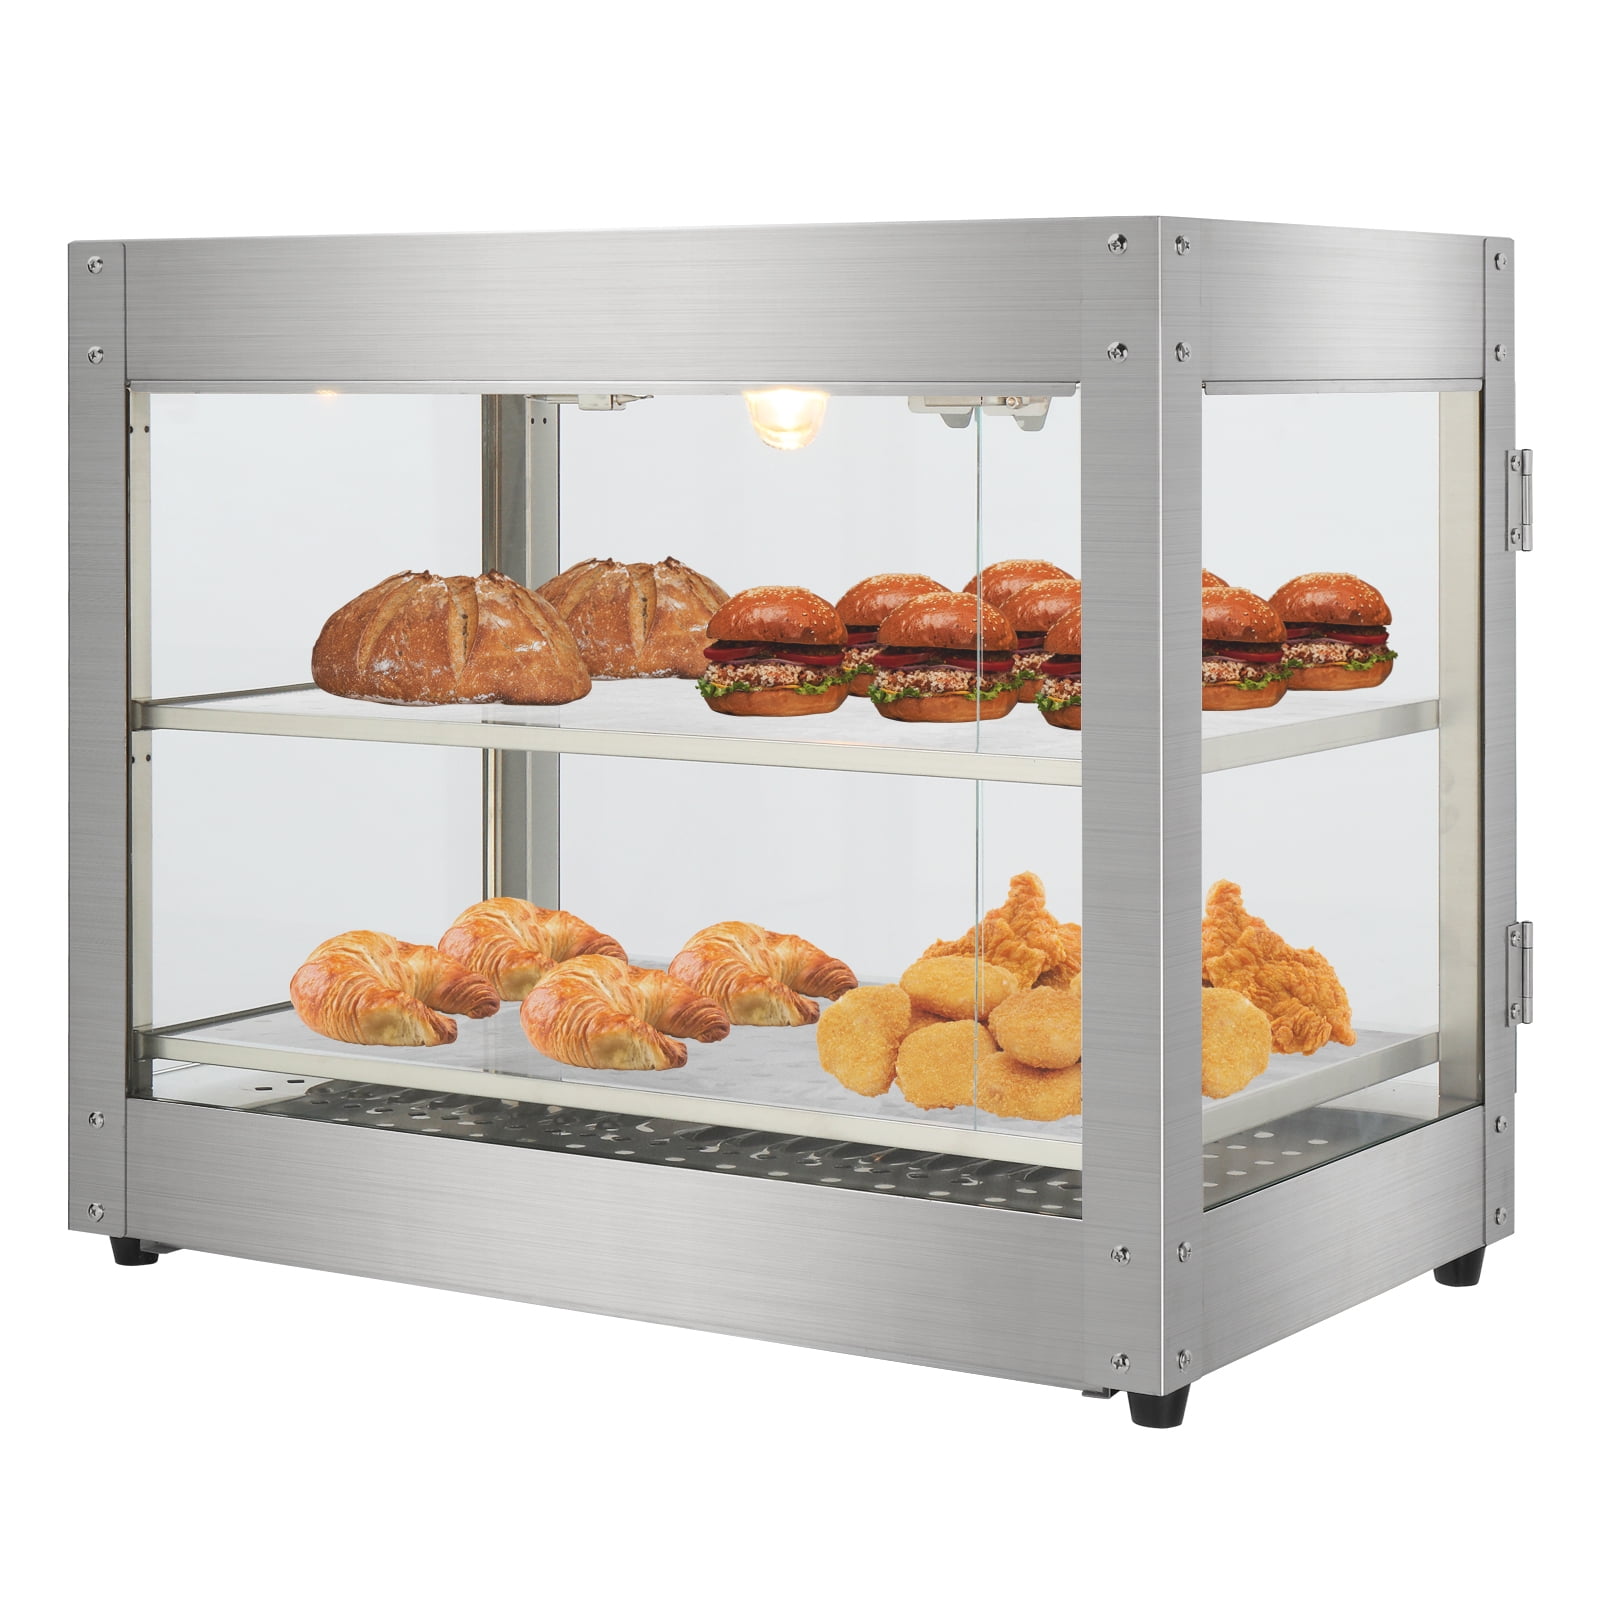 Techtongda Electric Food Pizza Warmer 3 Tiers Food Display Case Egg Tart  Food Warmer Display Cabinet